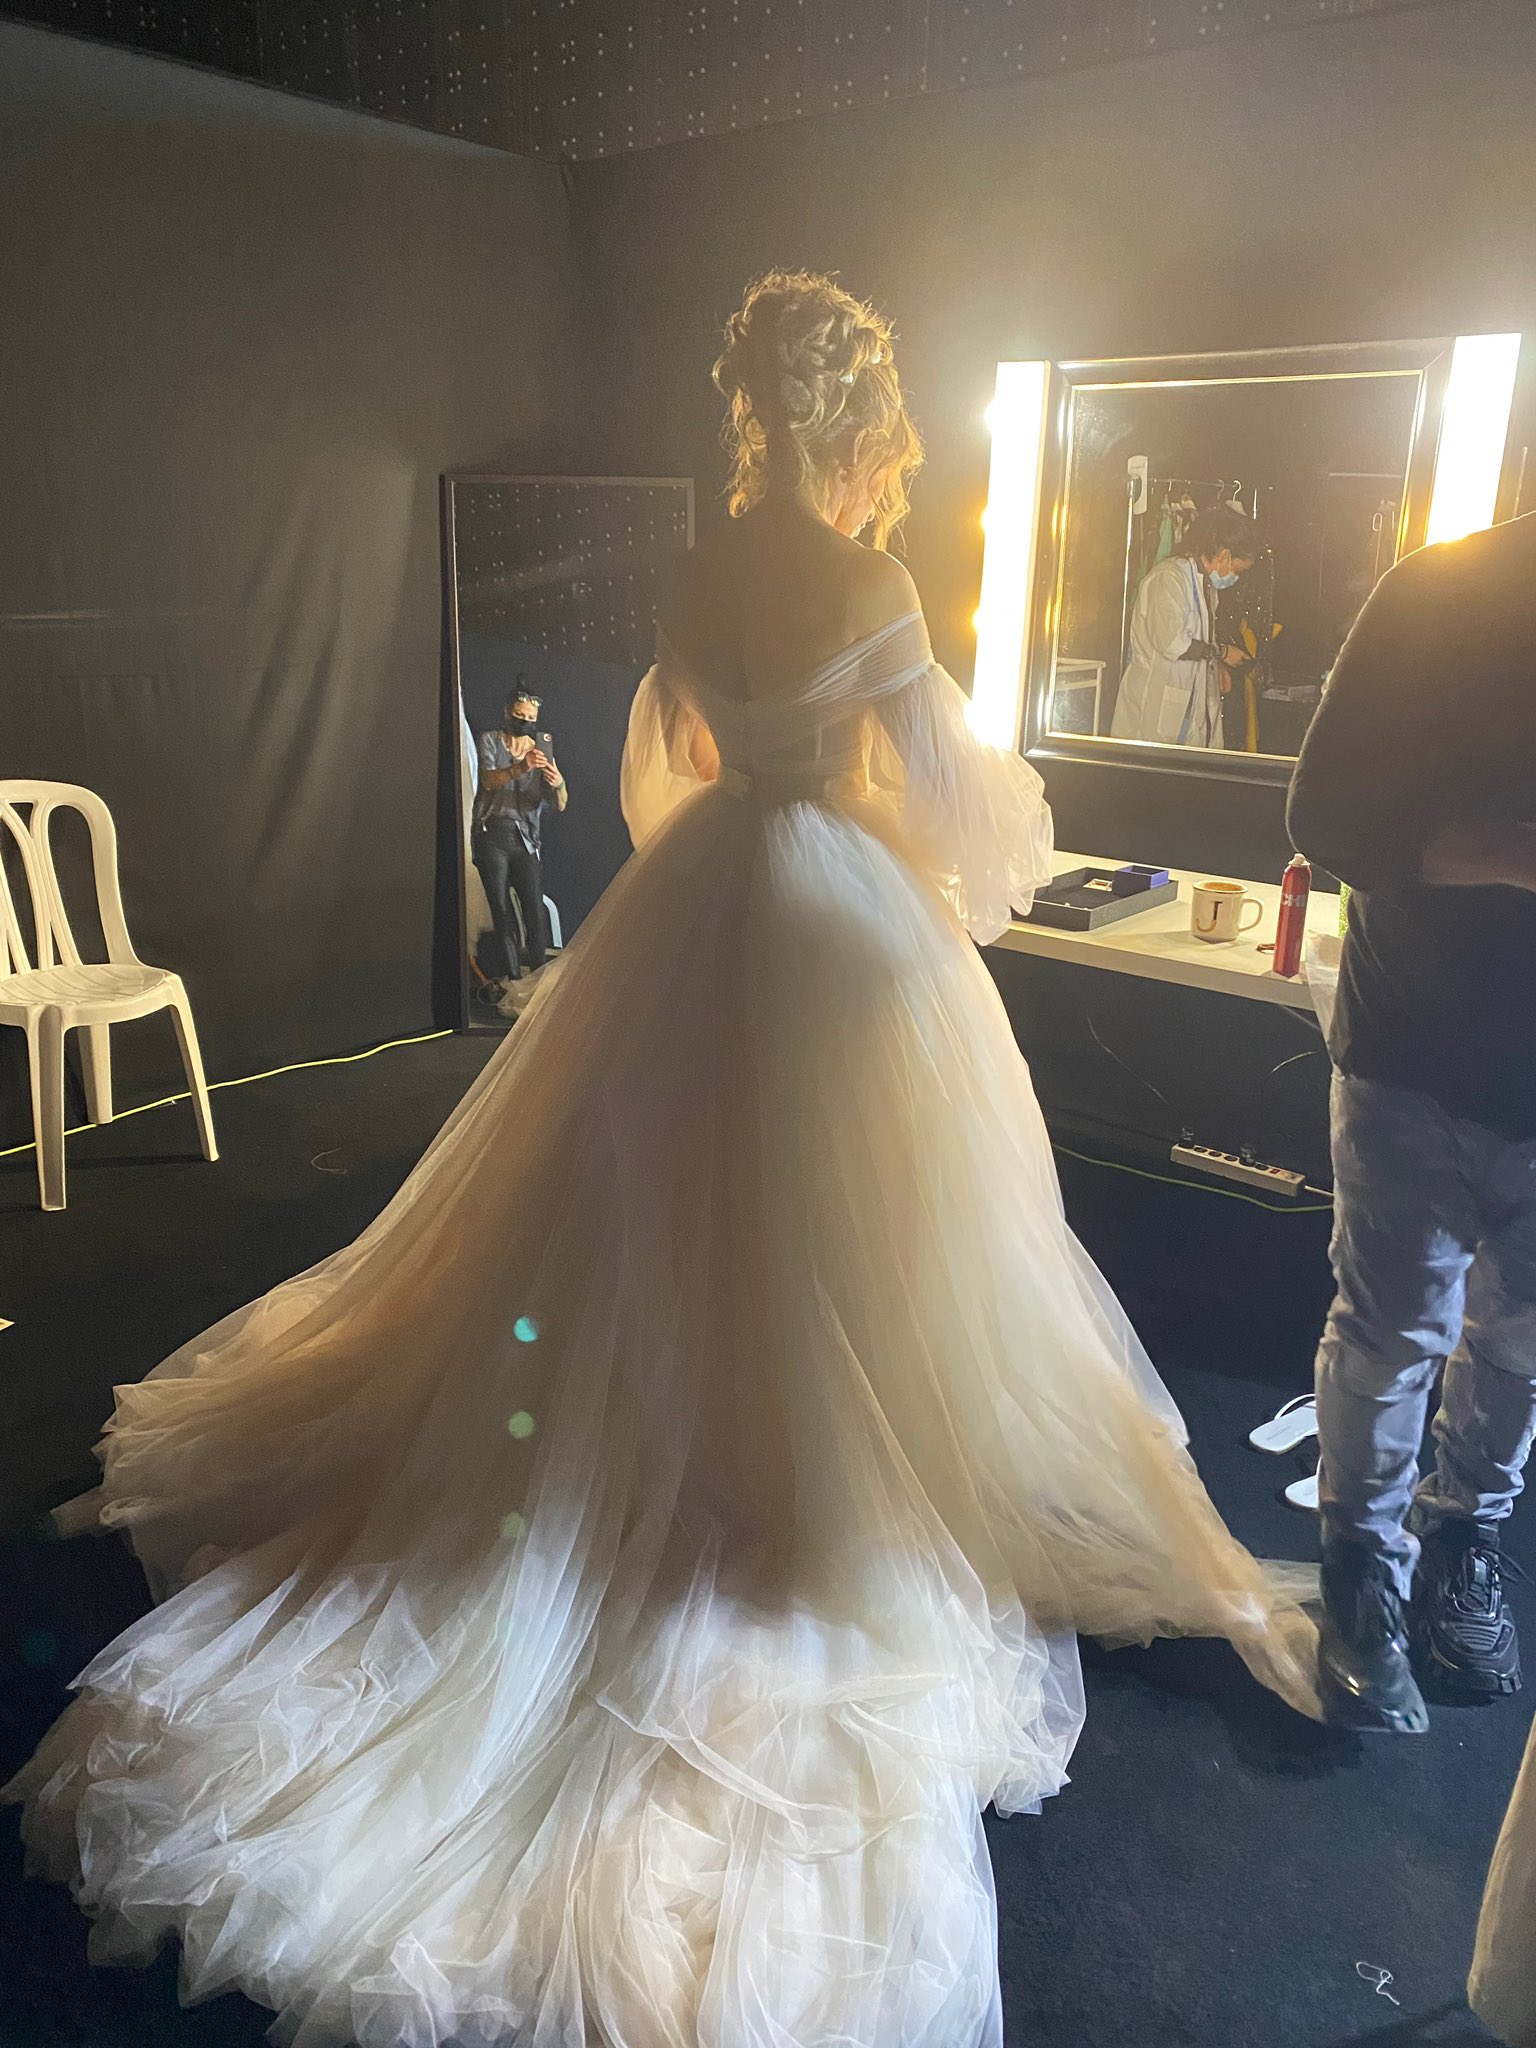 Bride to be. Jennifer Lopez, surprinsă în rochie de mireasă. Se căsătorește artista după ce a fost înșelată?